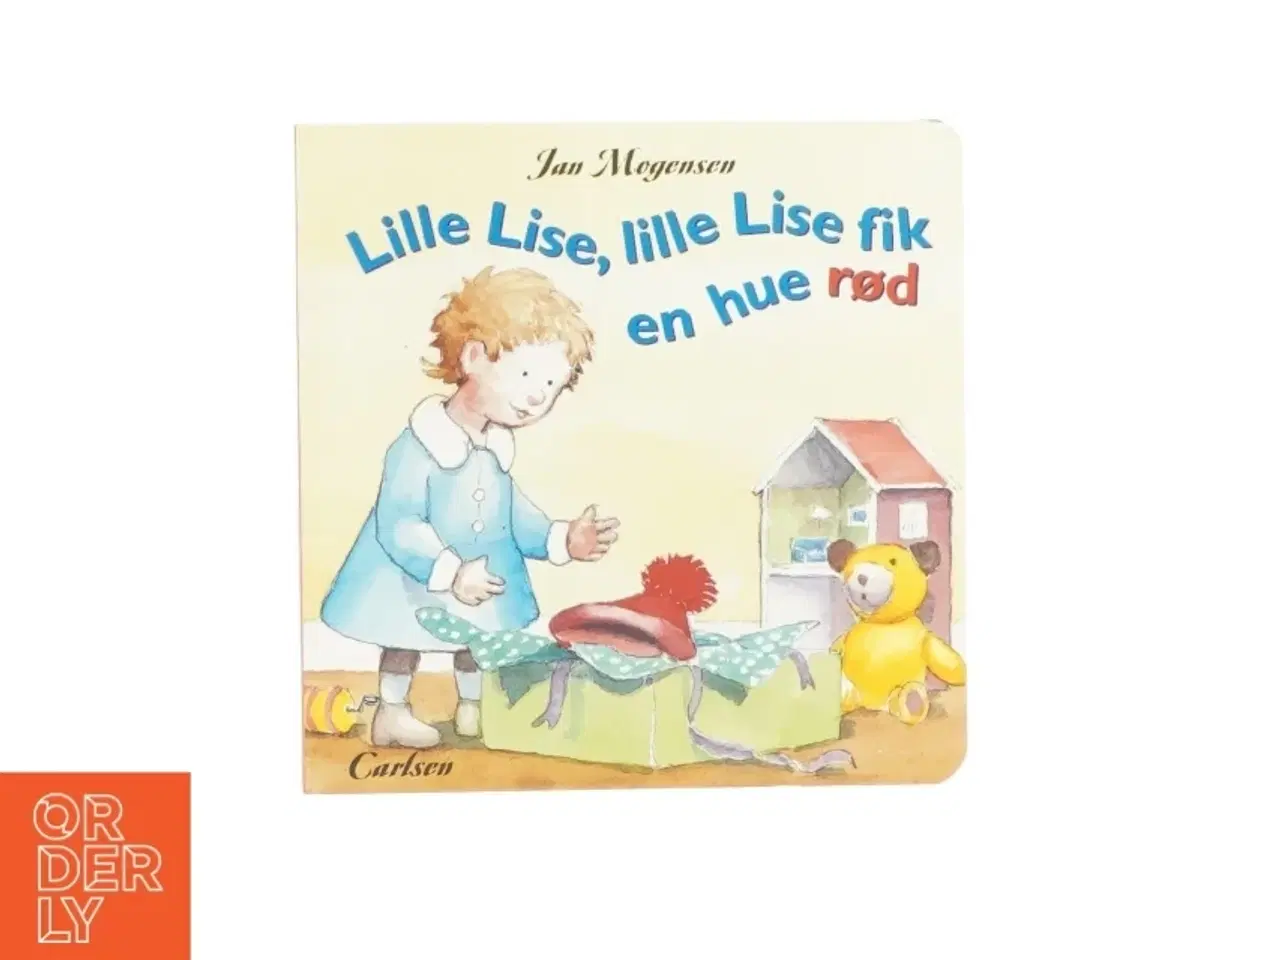 Billede 1 - Lille Lise, lille Lise fik en hue rød (bog)